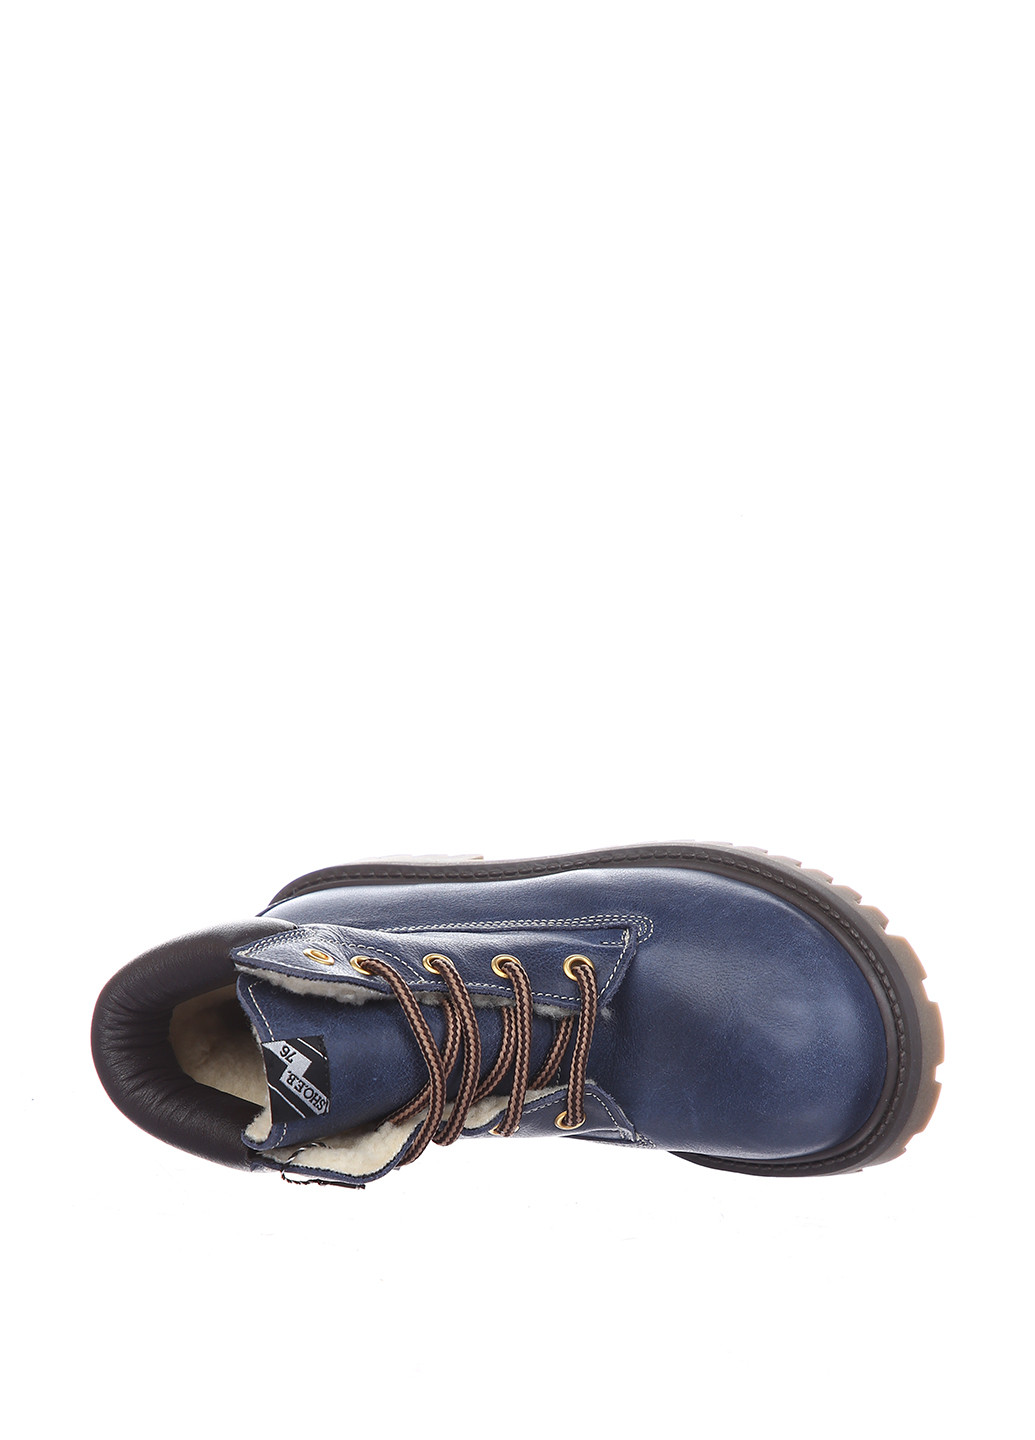 Синие кэжуал осенние ботинки SHO.E.B.76